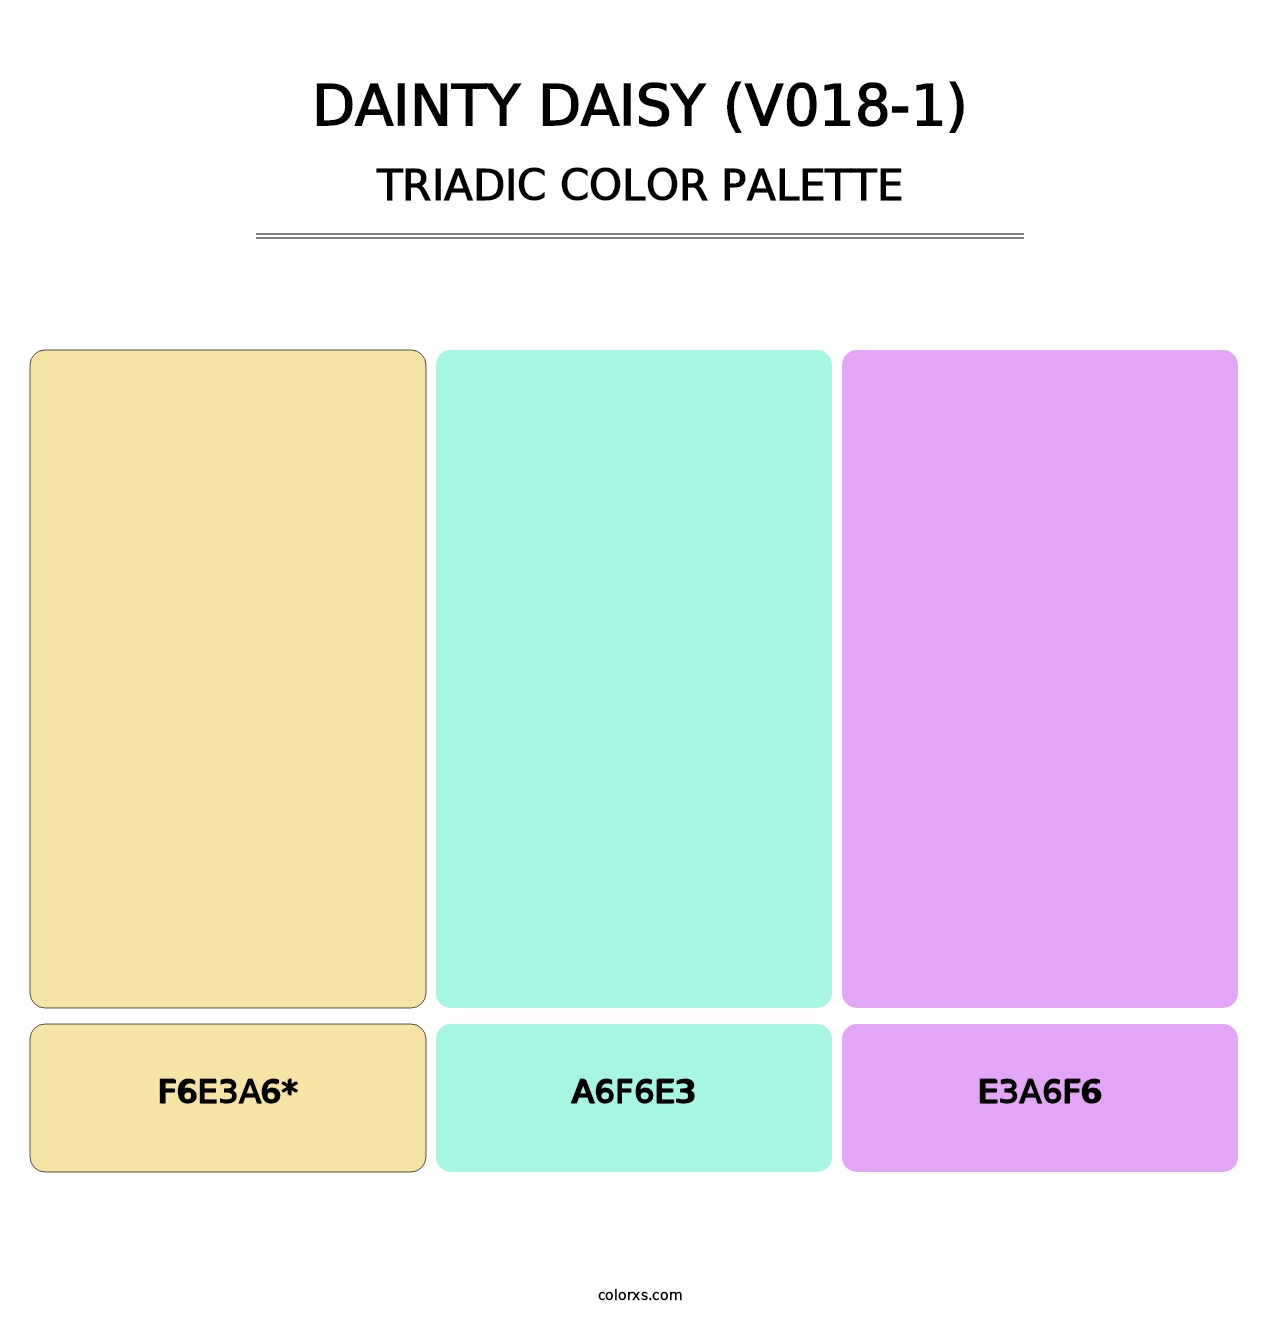 Dainty Daisy (V018-1) - Triadic Color Palette